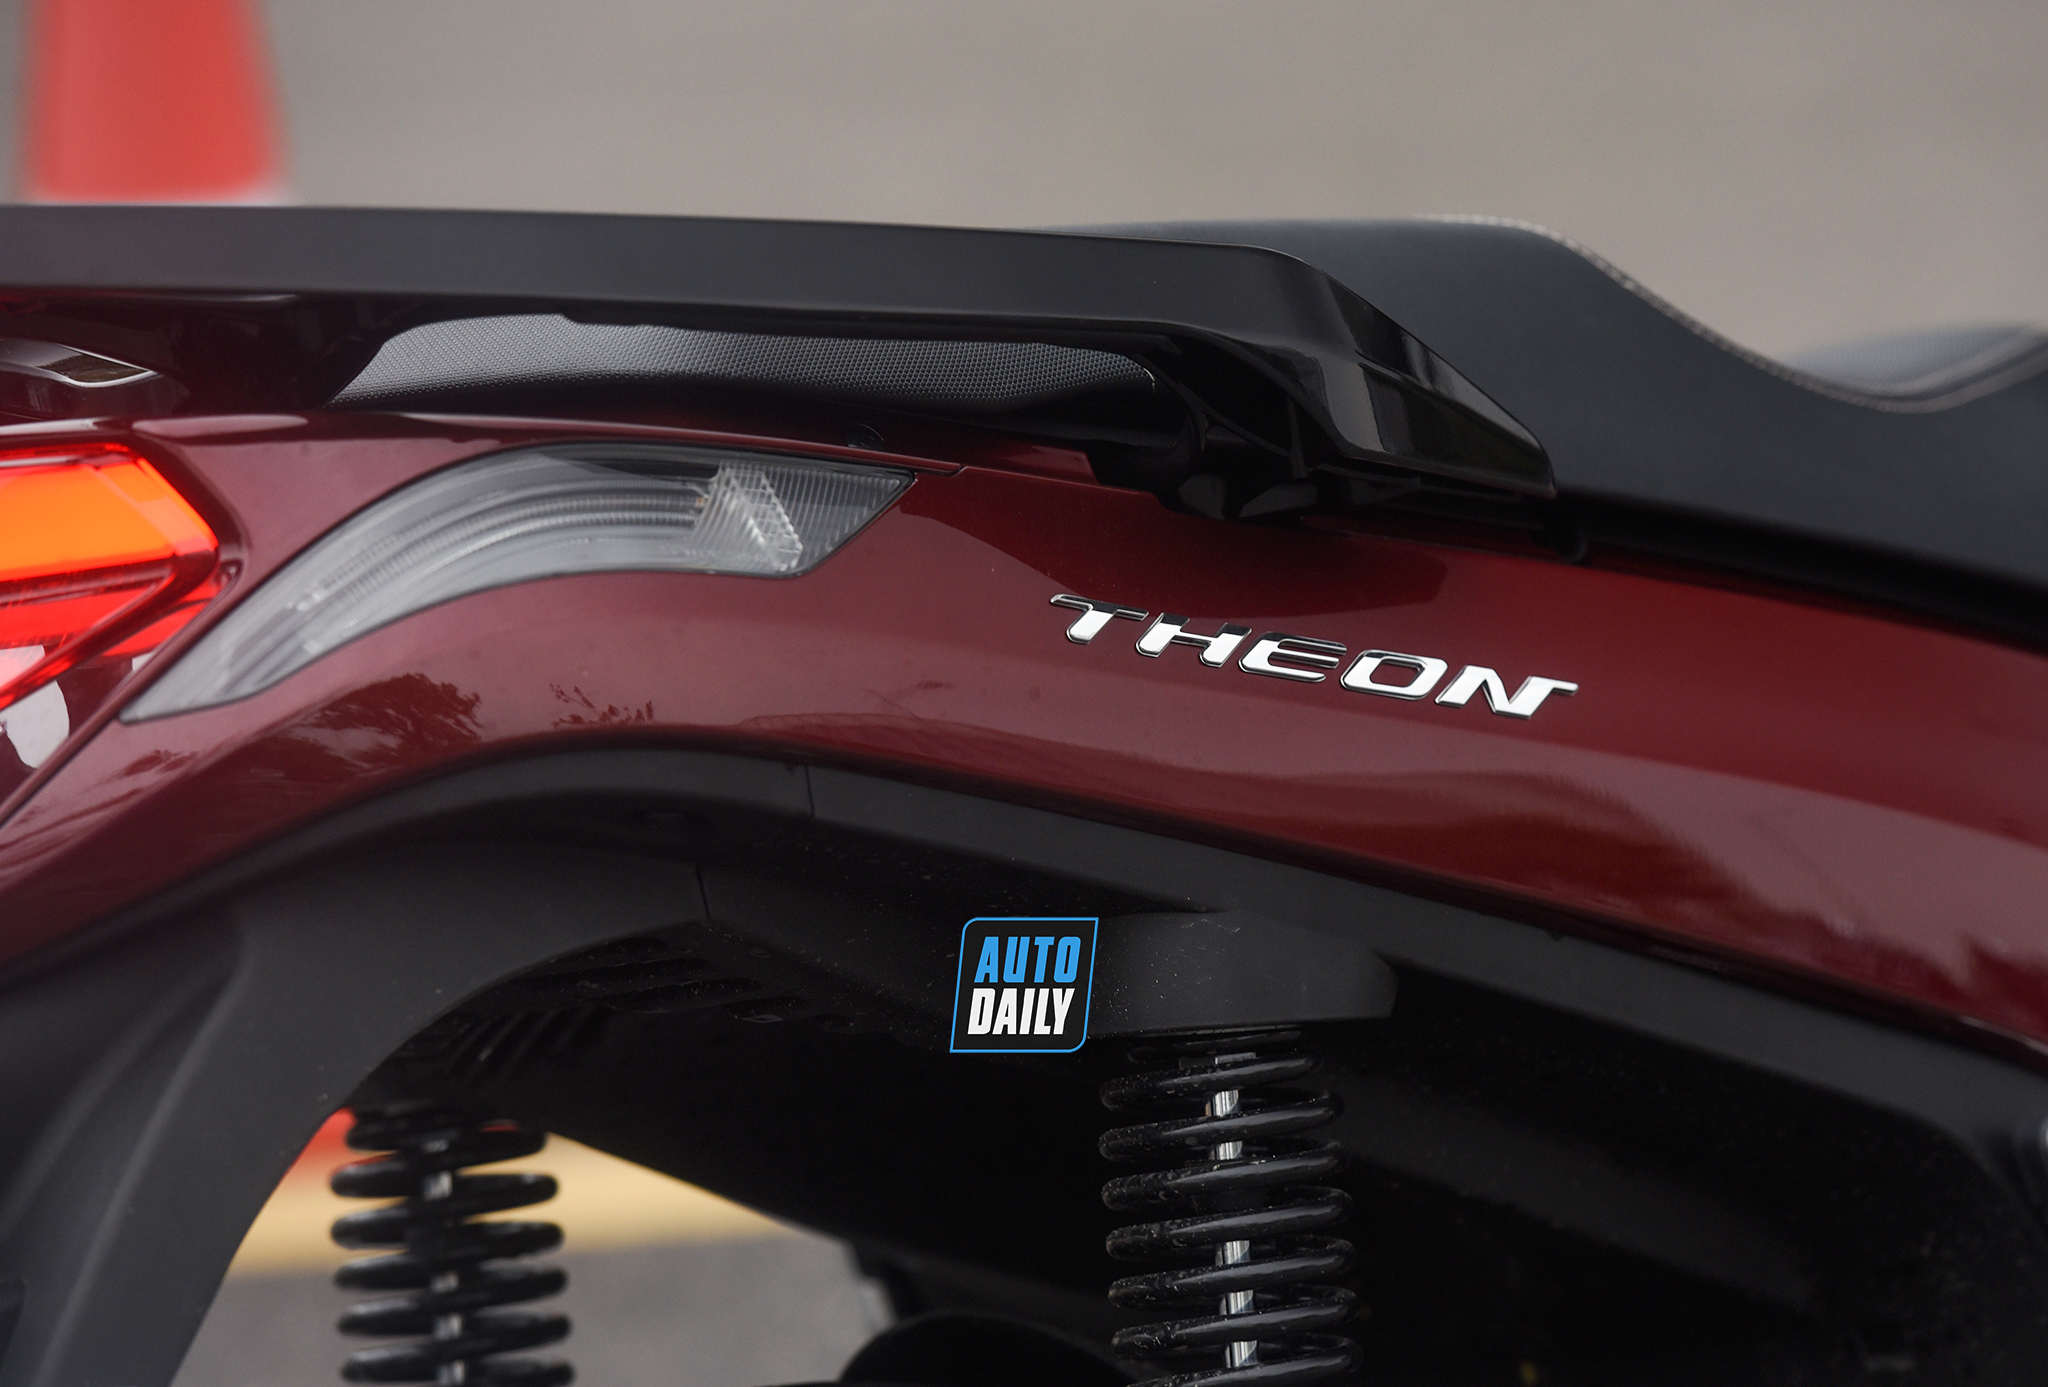 VinFast Theon 2021 bắt đầu được bàn giao đến tay khách hàng Chi tiết VinFast Theon - Xe máy điện cao cấp nhiều công nghệ tiên tiến dsc-8749-copy.jpg